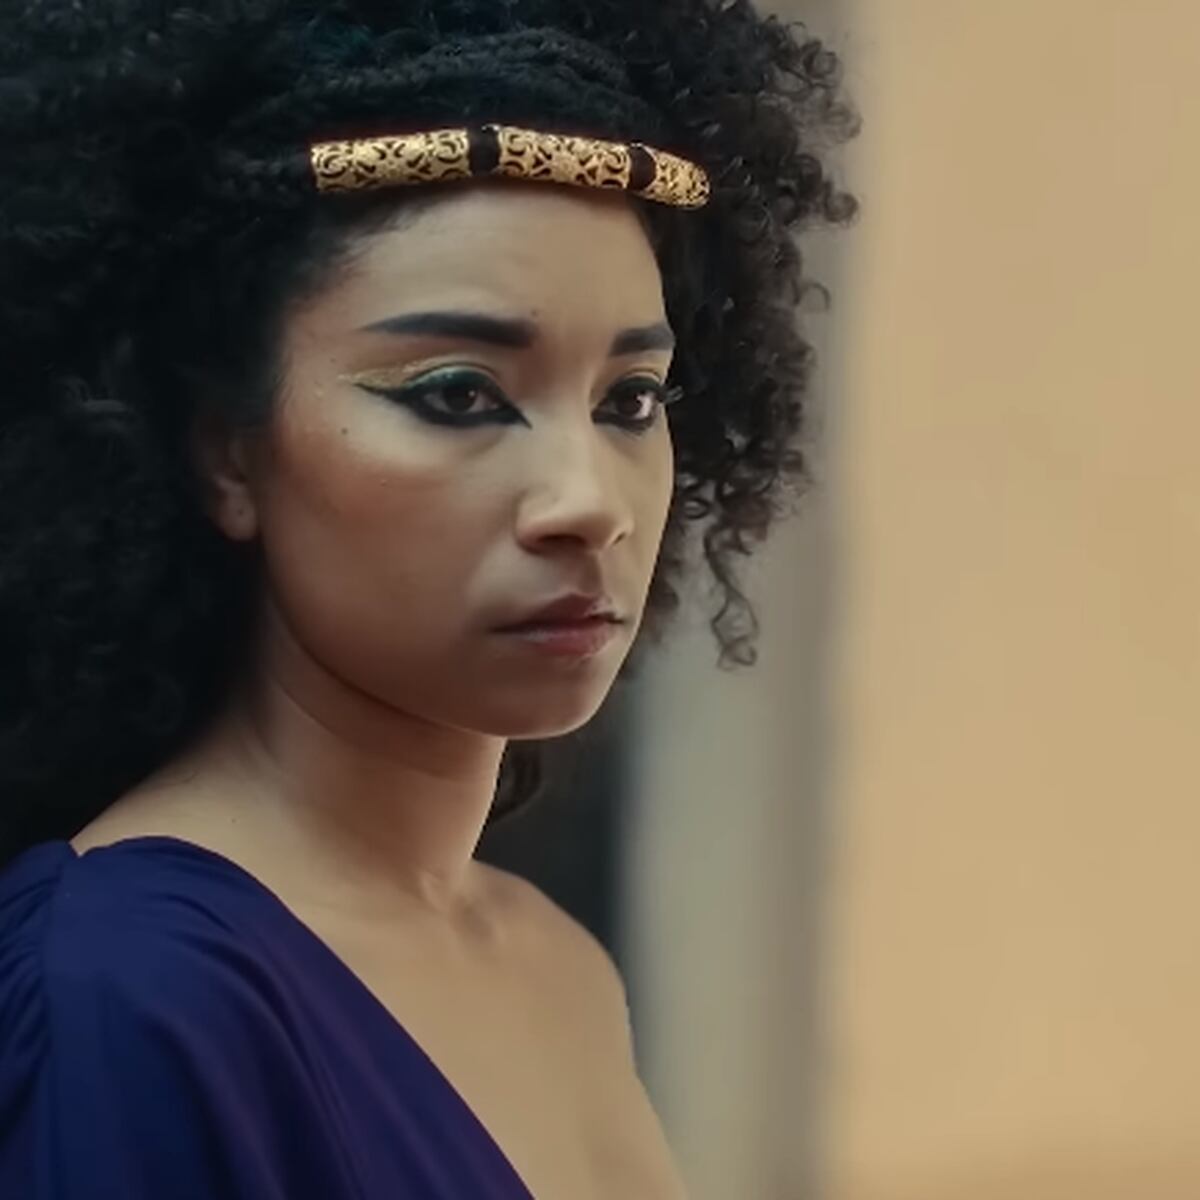 10 particularidades sobre Cleópatra, a rainha do Nilo